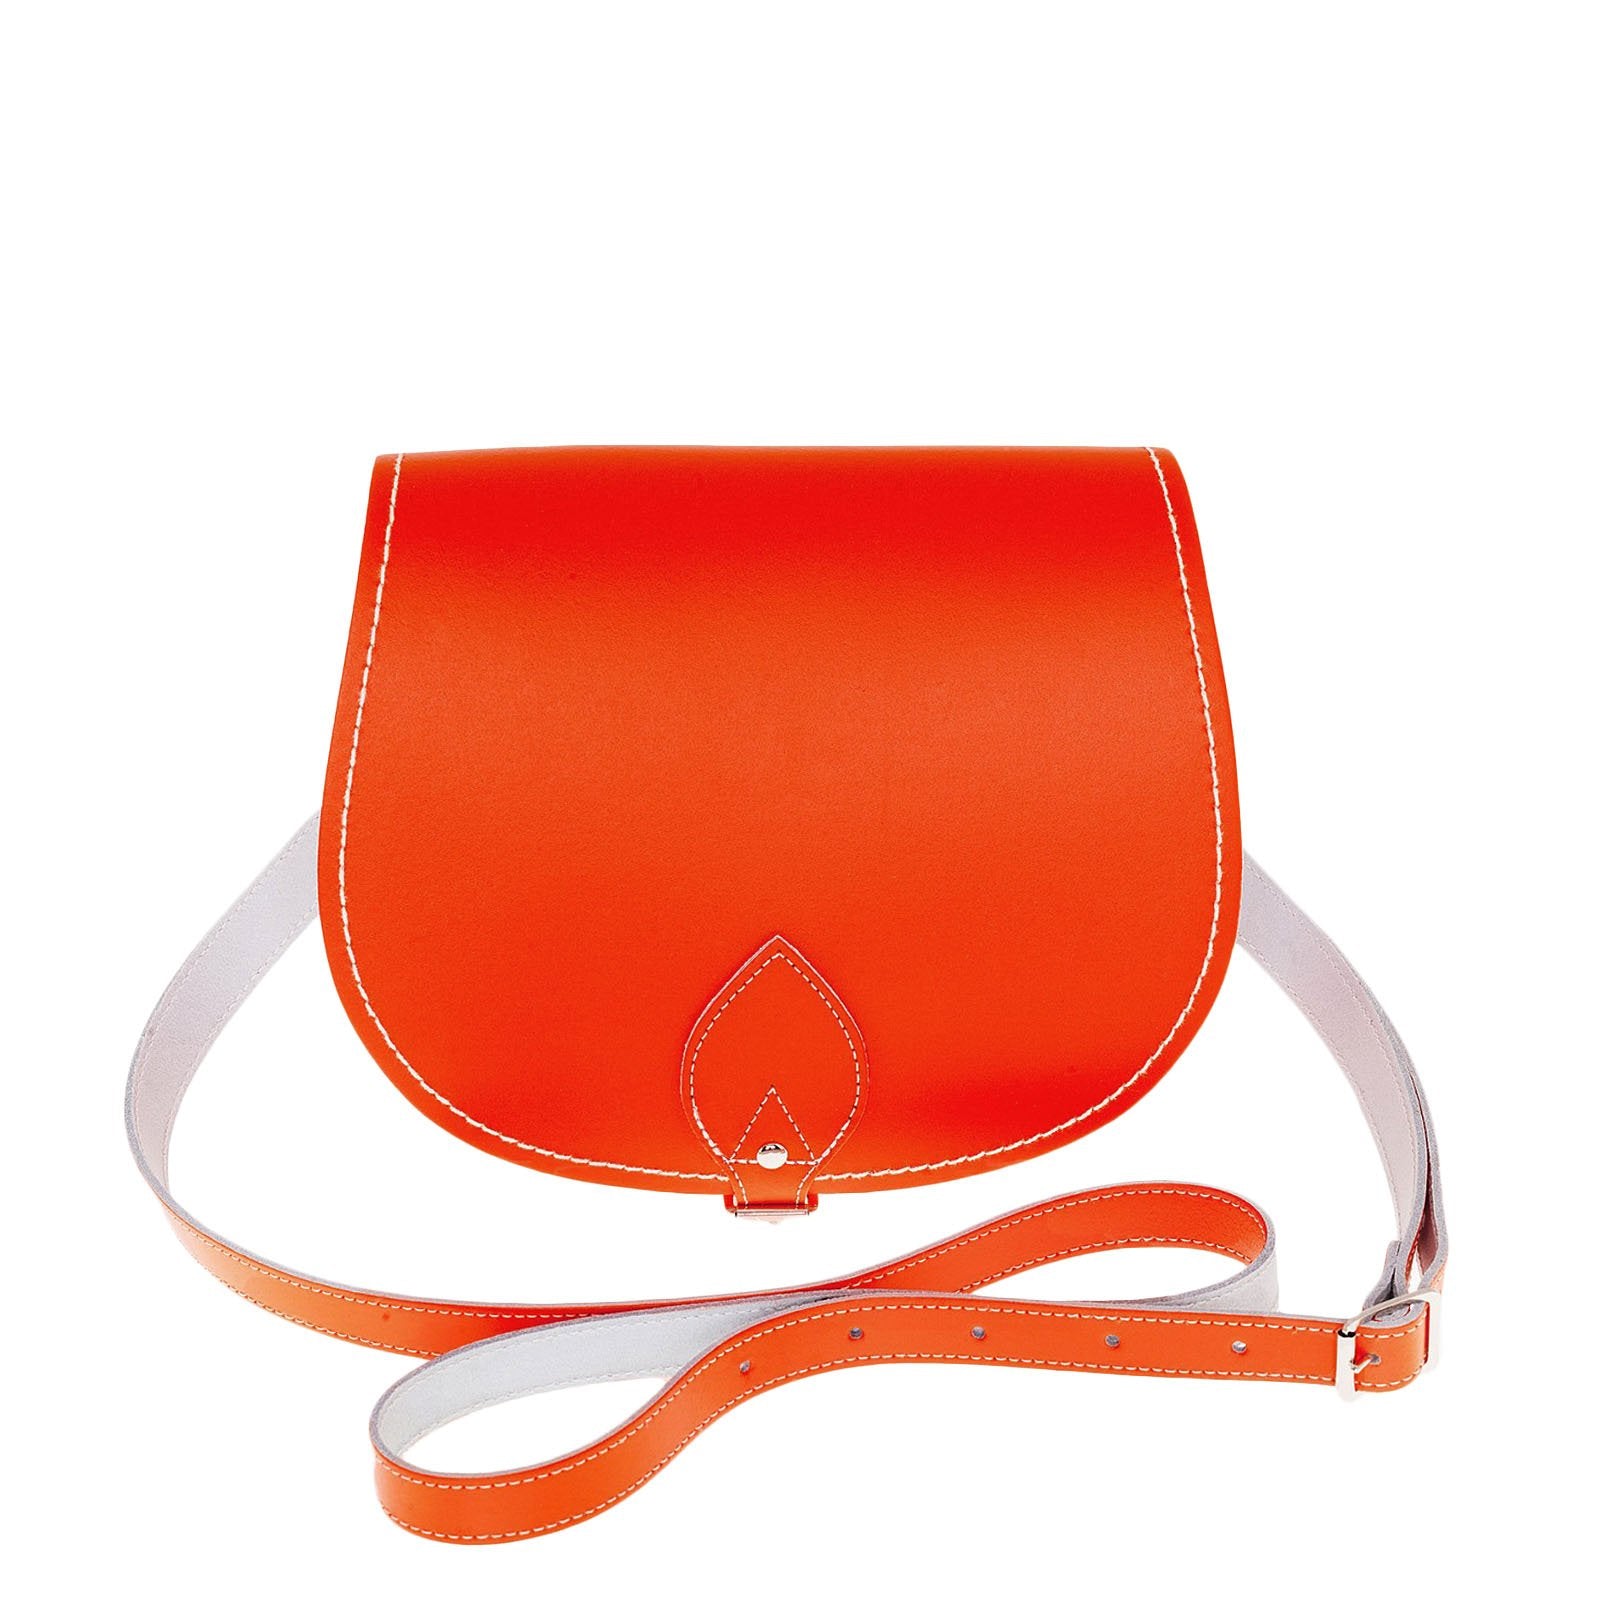 Handmade Leather Saddle Bag - Orange - Large